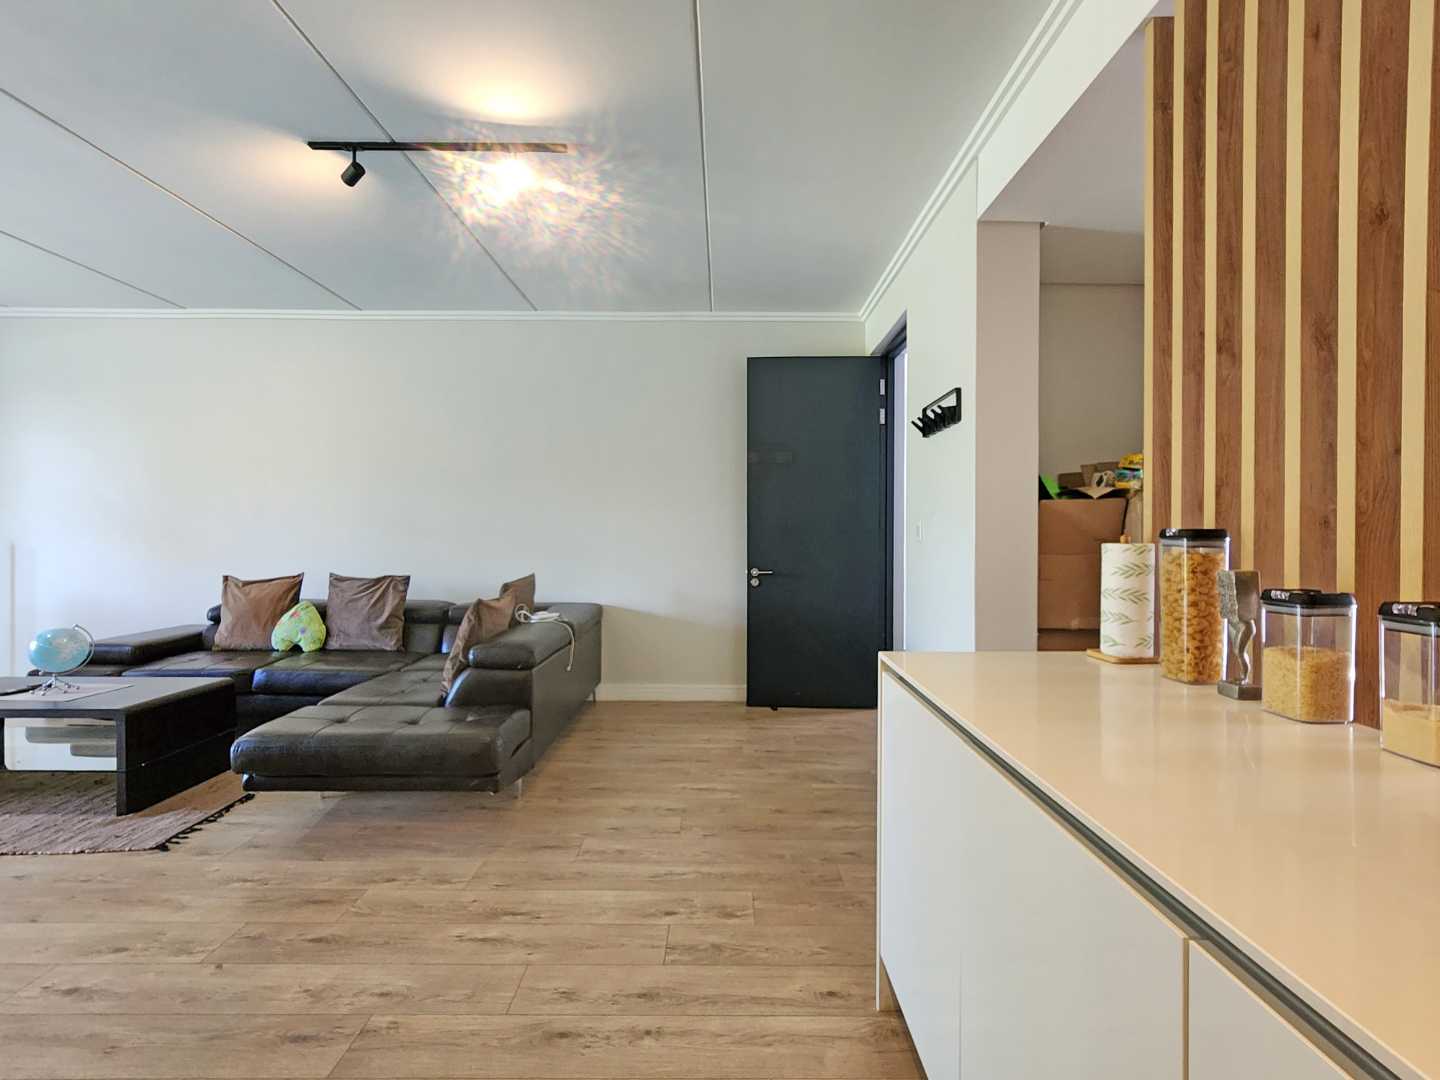 To Let 3 Bedroom Property for Rent in Linksfield Gauteng